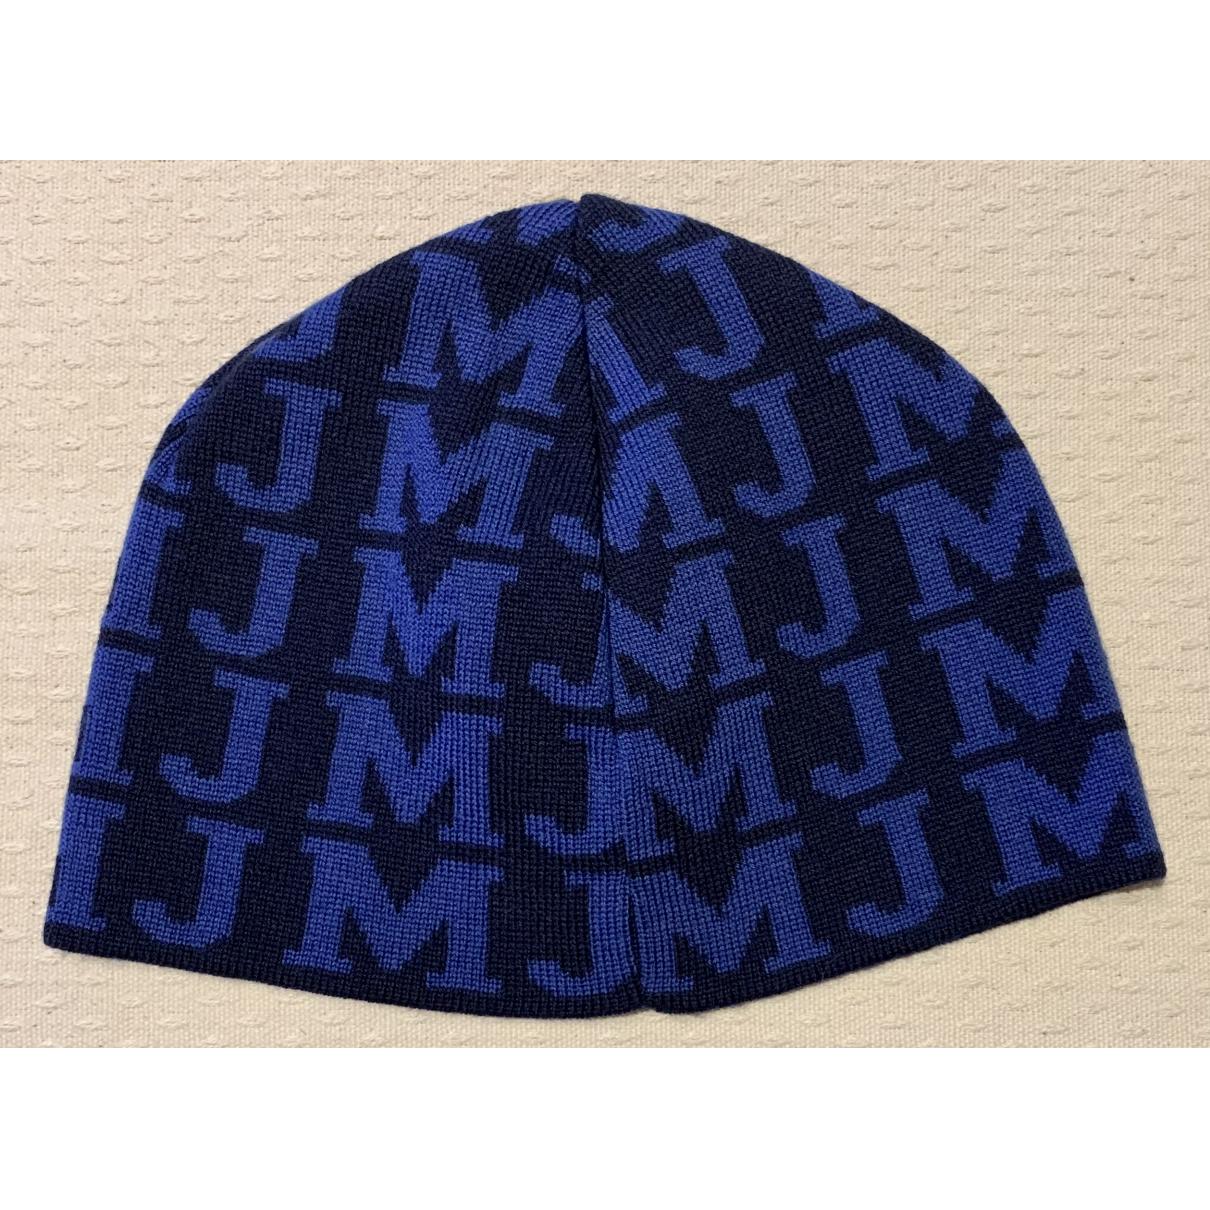 Buy JORDAN Wool hat online